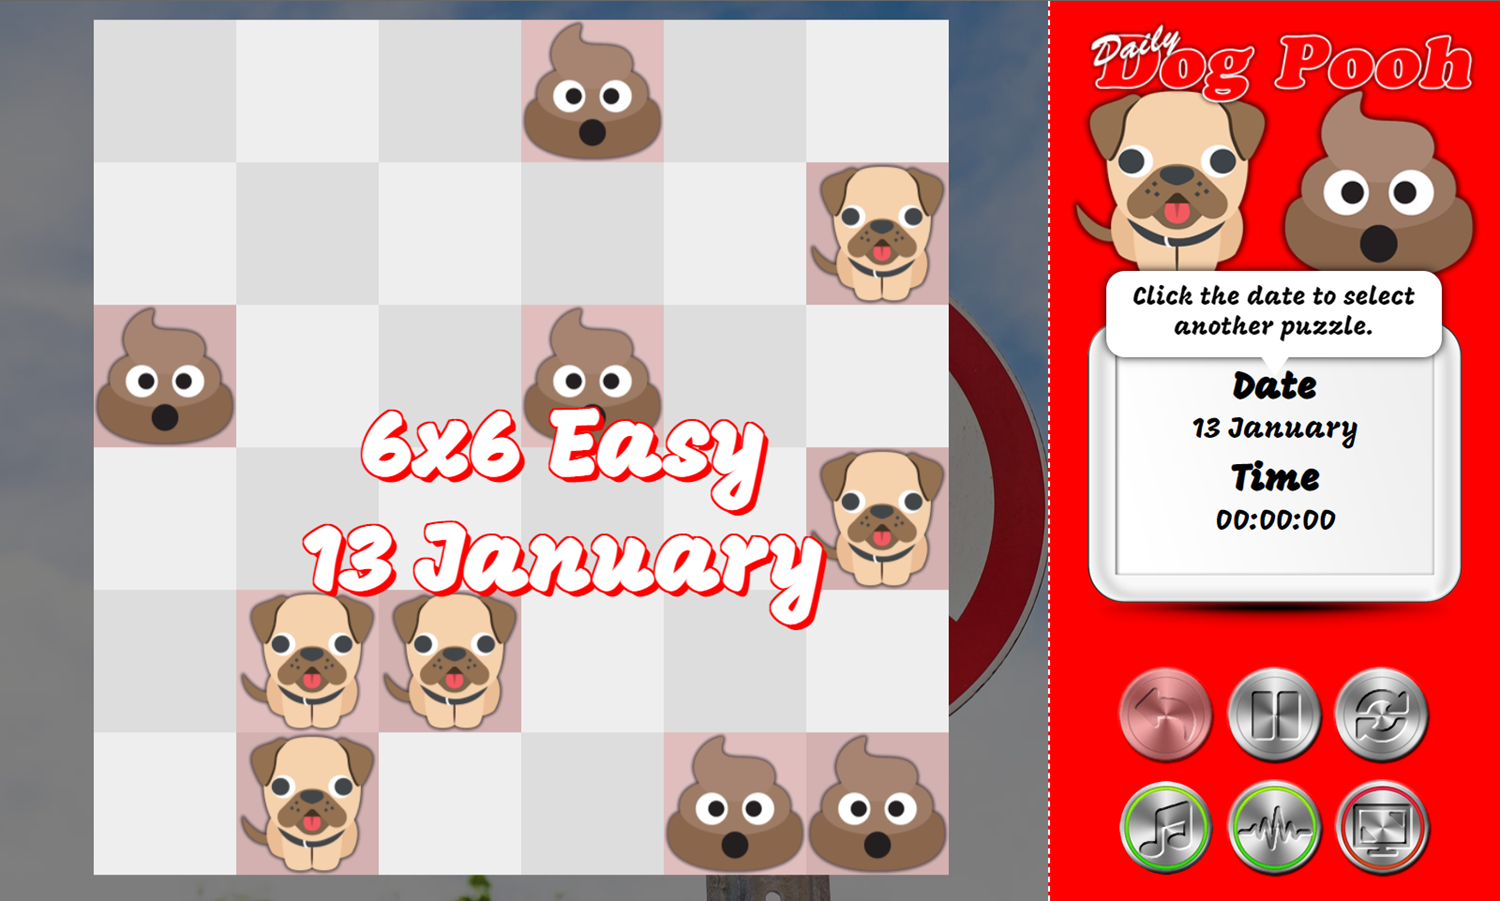 Daily Dog Pooh Game Start Screenshot.